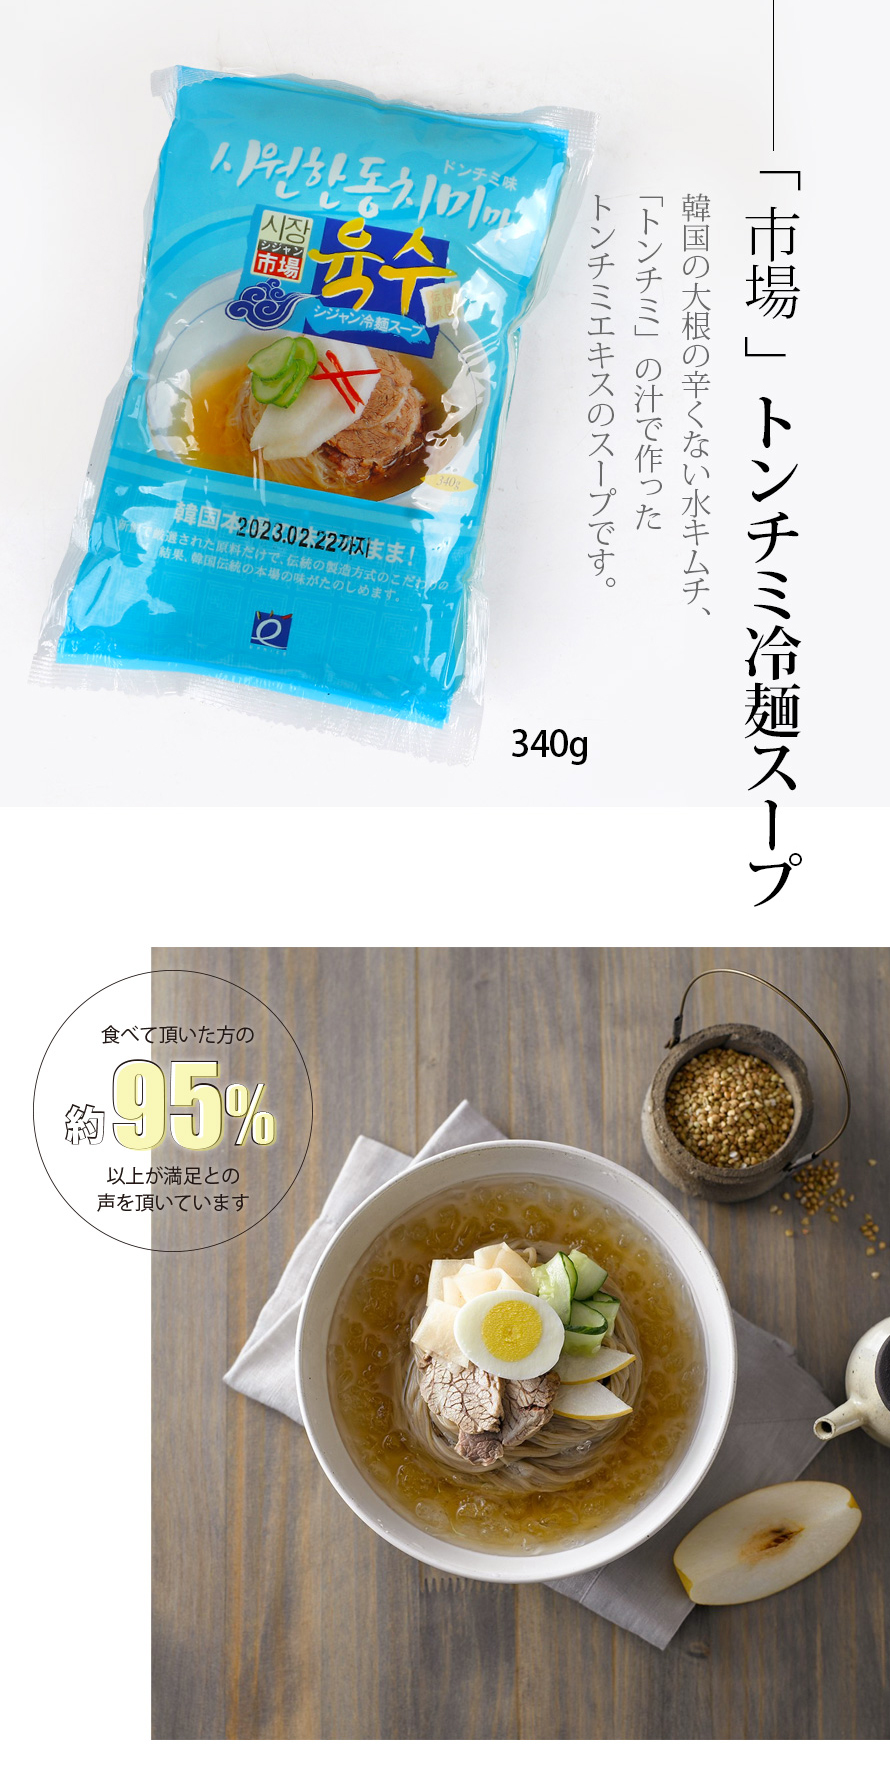 [市場]冷麺スープ(トンチミ味)340g/韓国商品 韓国食材 韓国冷麺 韓国スープ